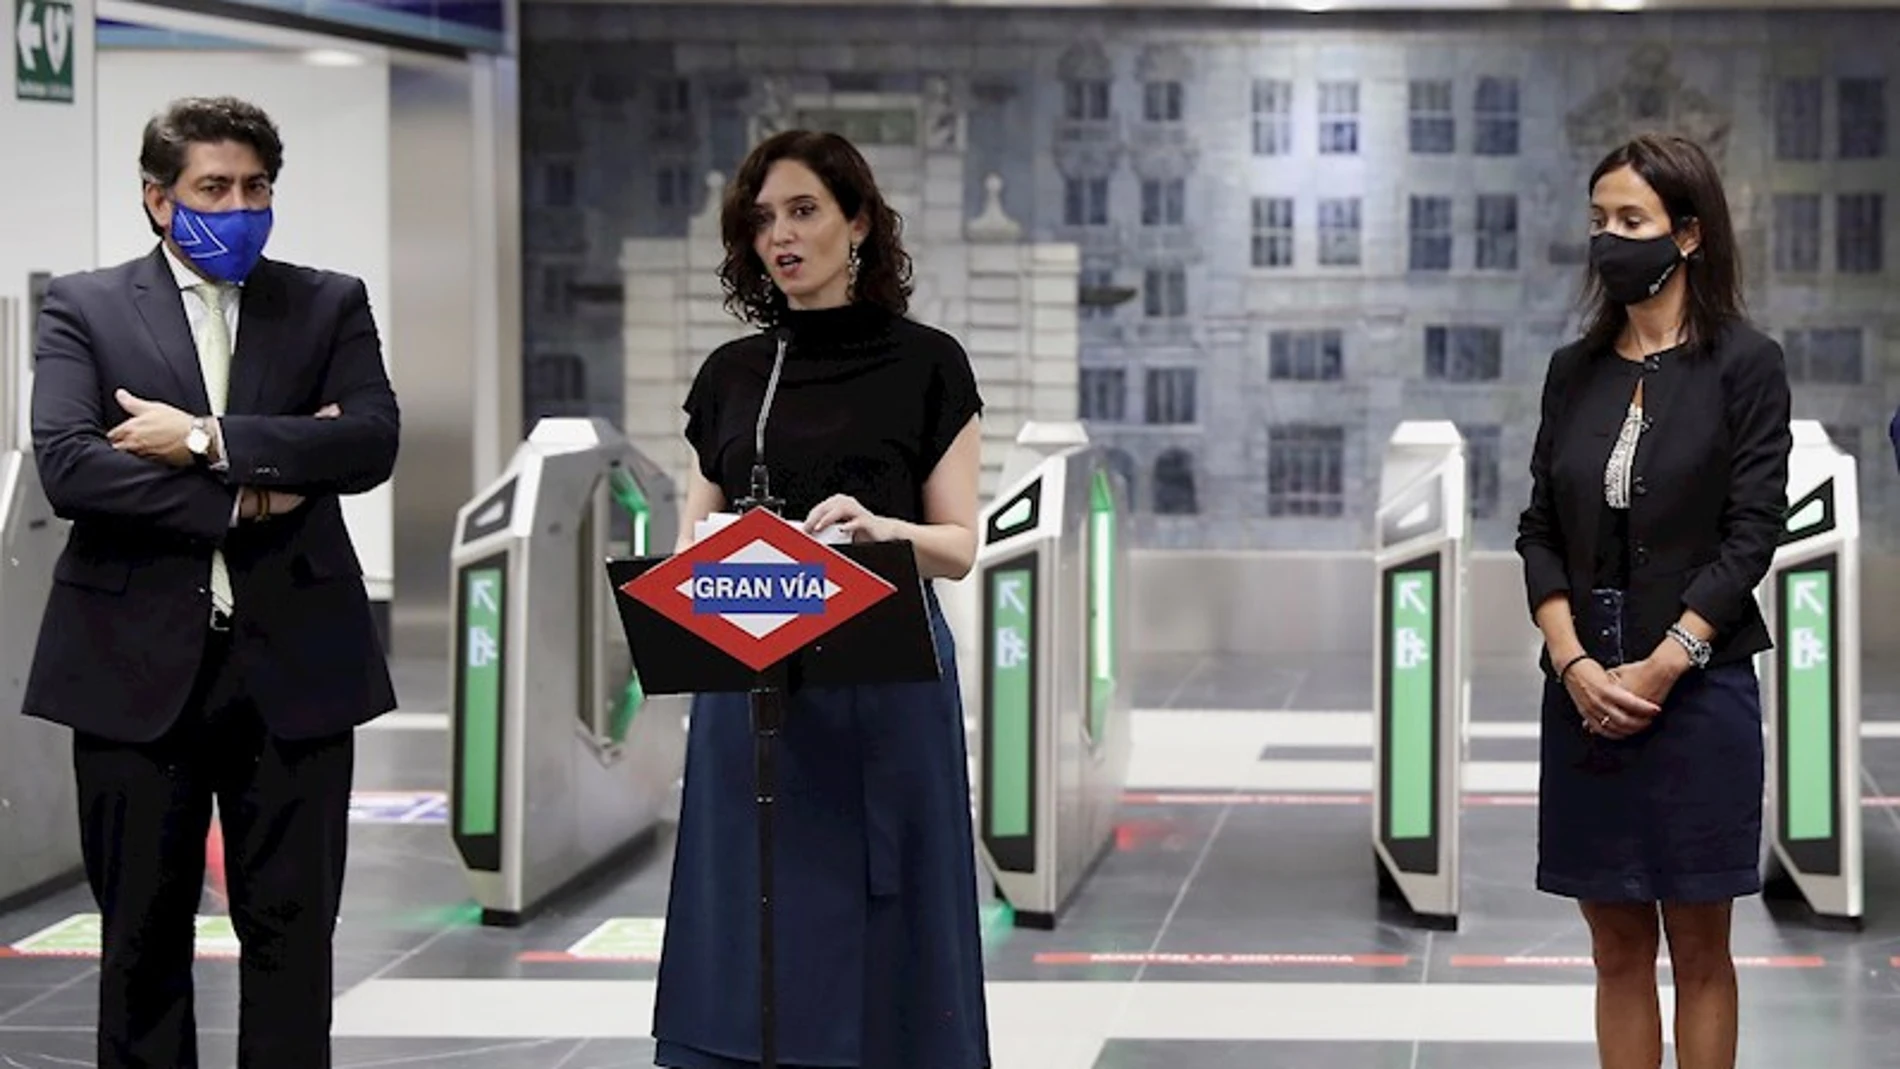 Metro de Madrid reabre la estación de Gran Vía con la inauguración de Díaz Ayuso tras más de 1.000 días cerrada